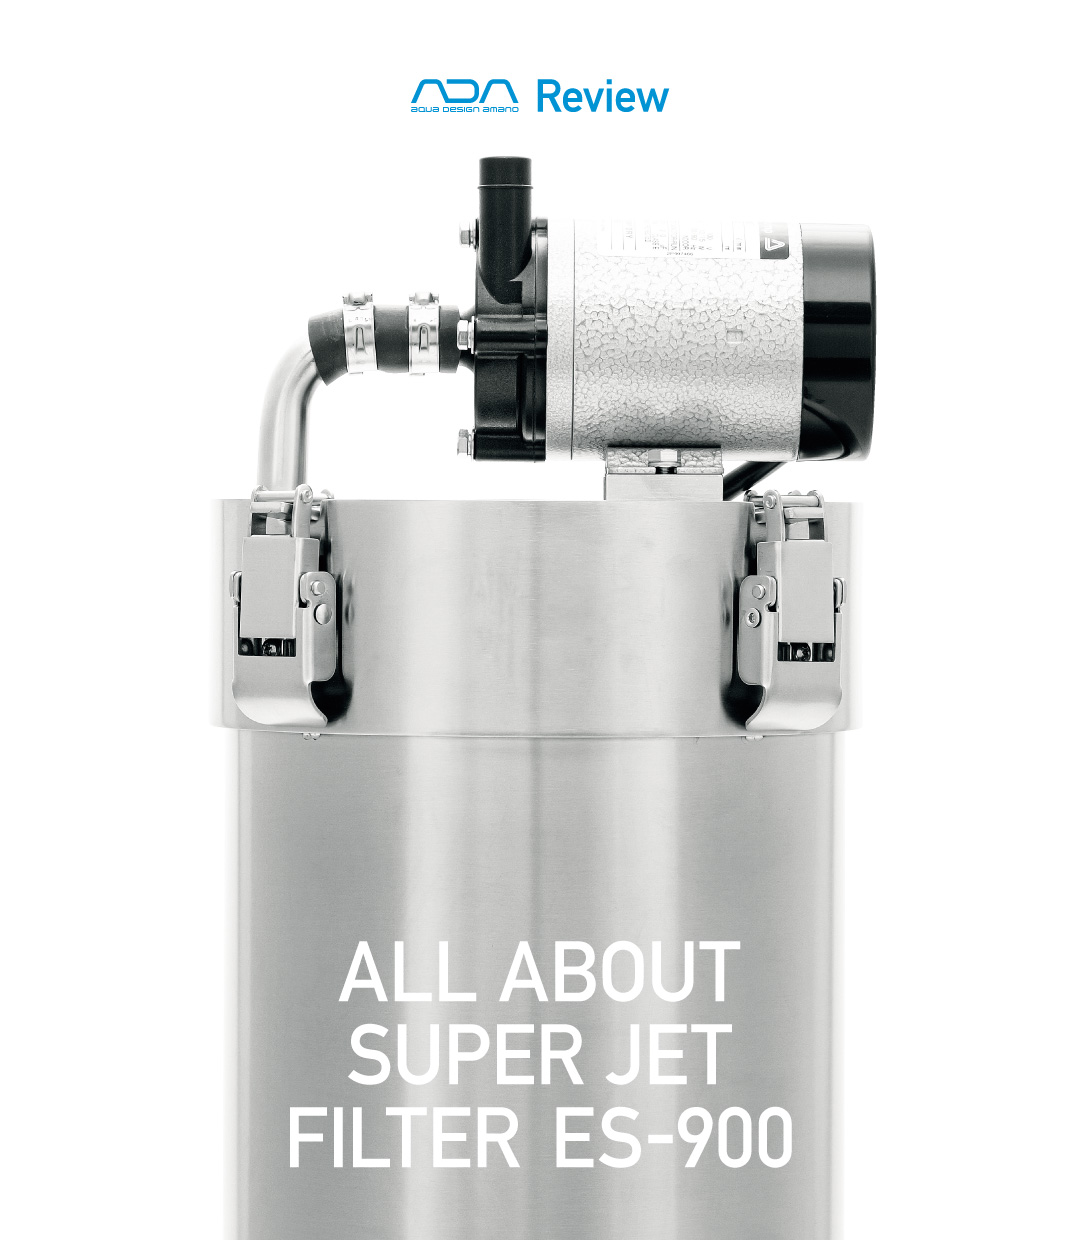 ADA Review 「徹底解説! スーパージェットフィルターES-900」